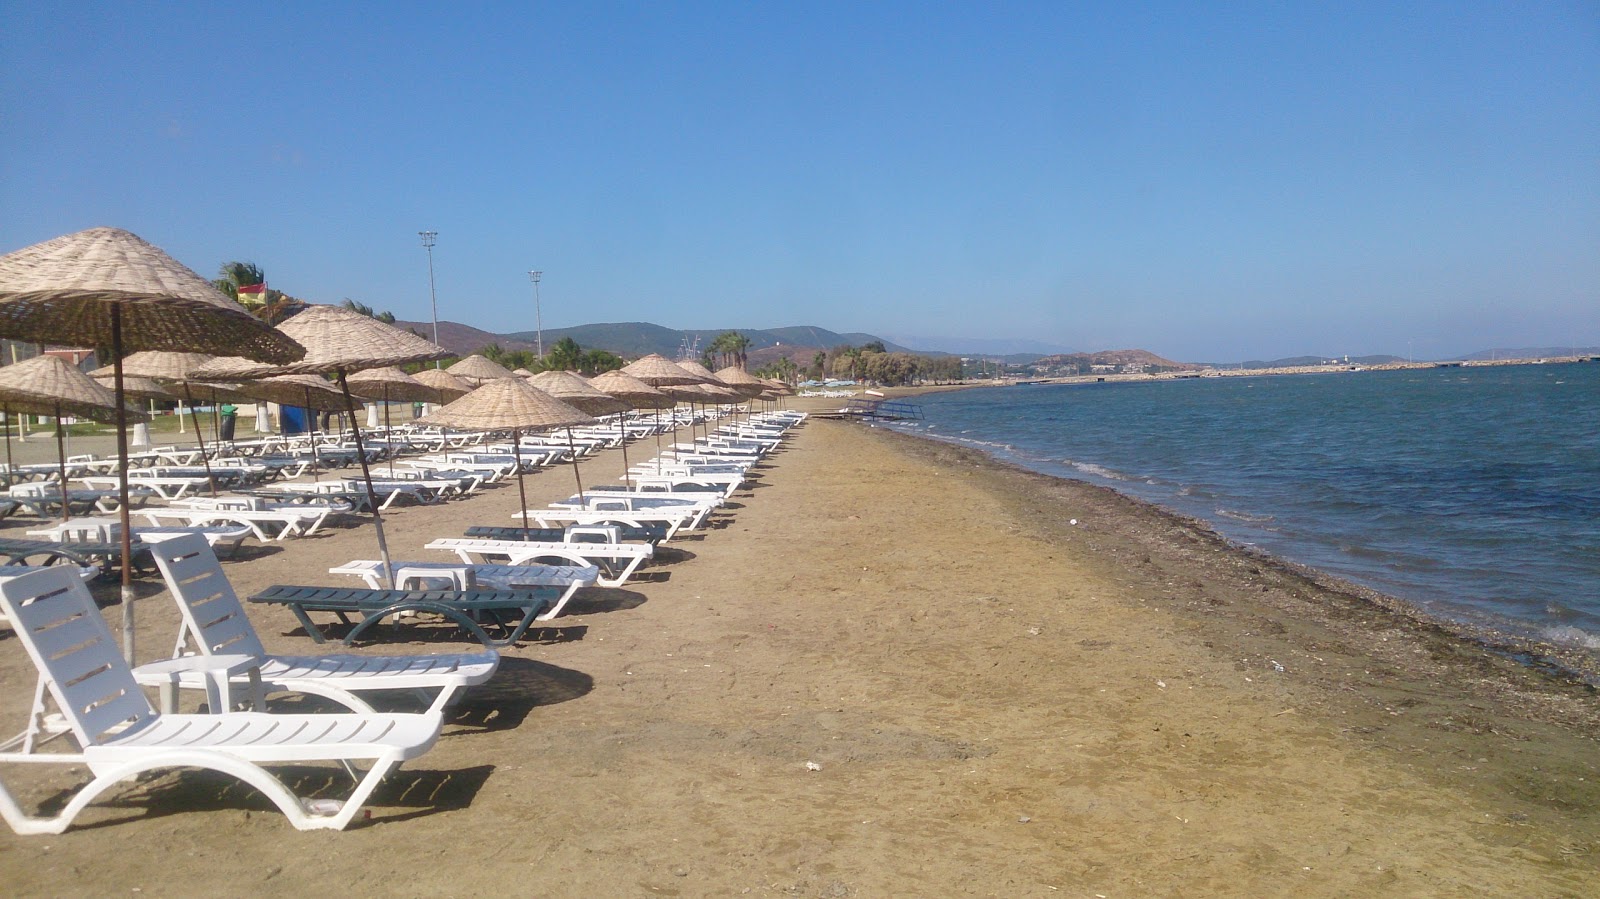 Foto av Kum Plaj med brunsand yta